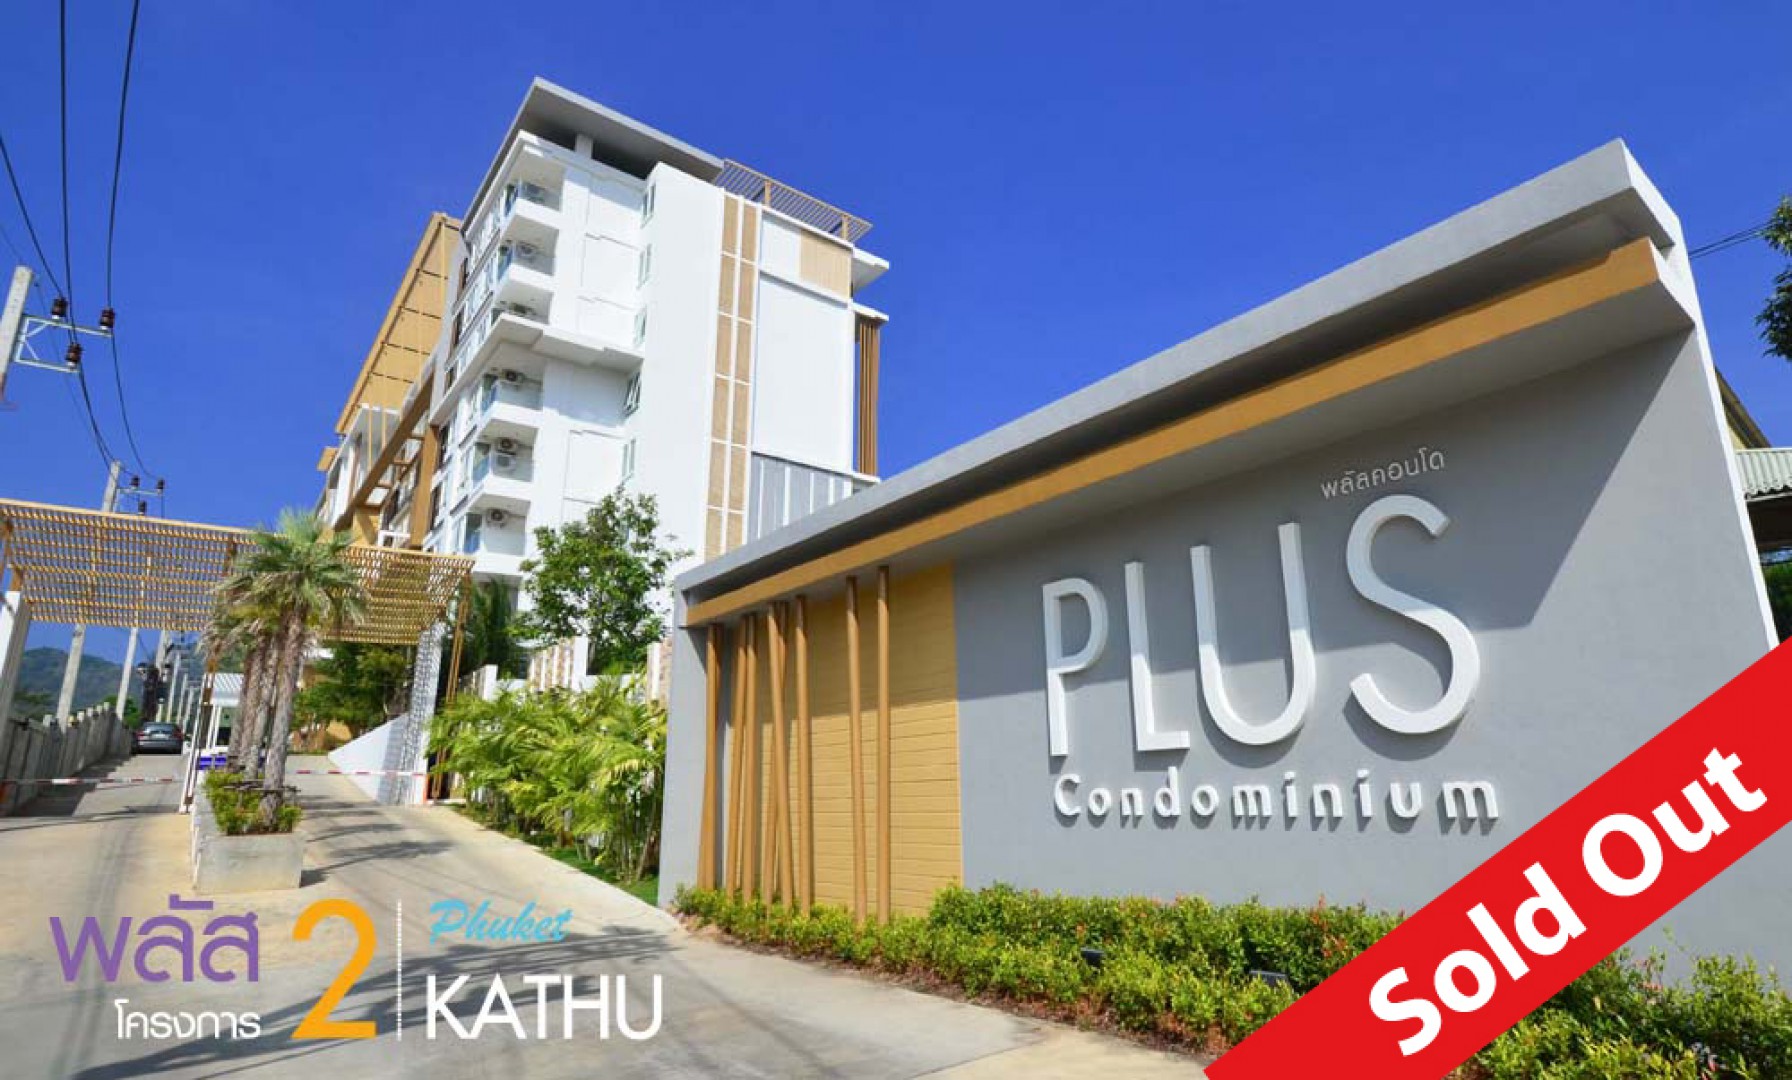 Plus Condominium Phuket 2